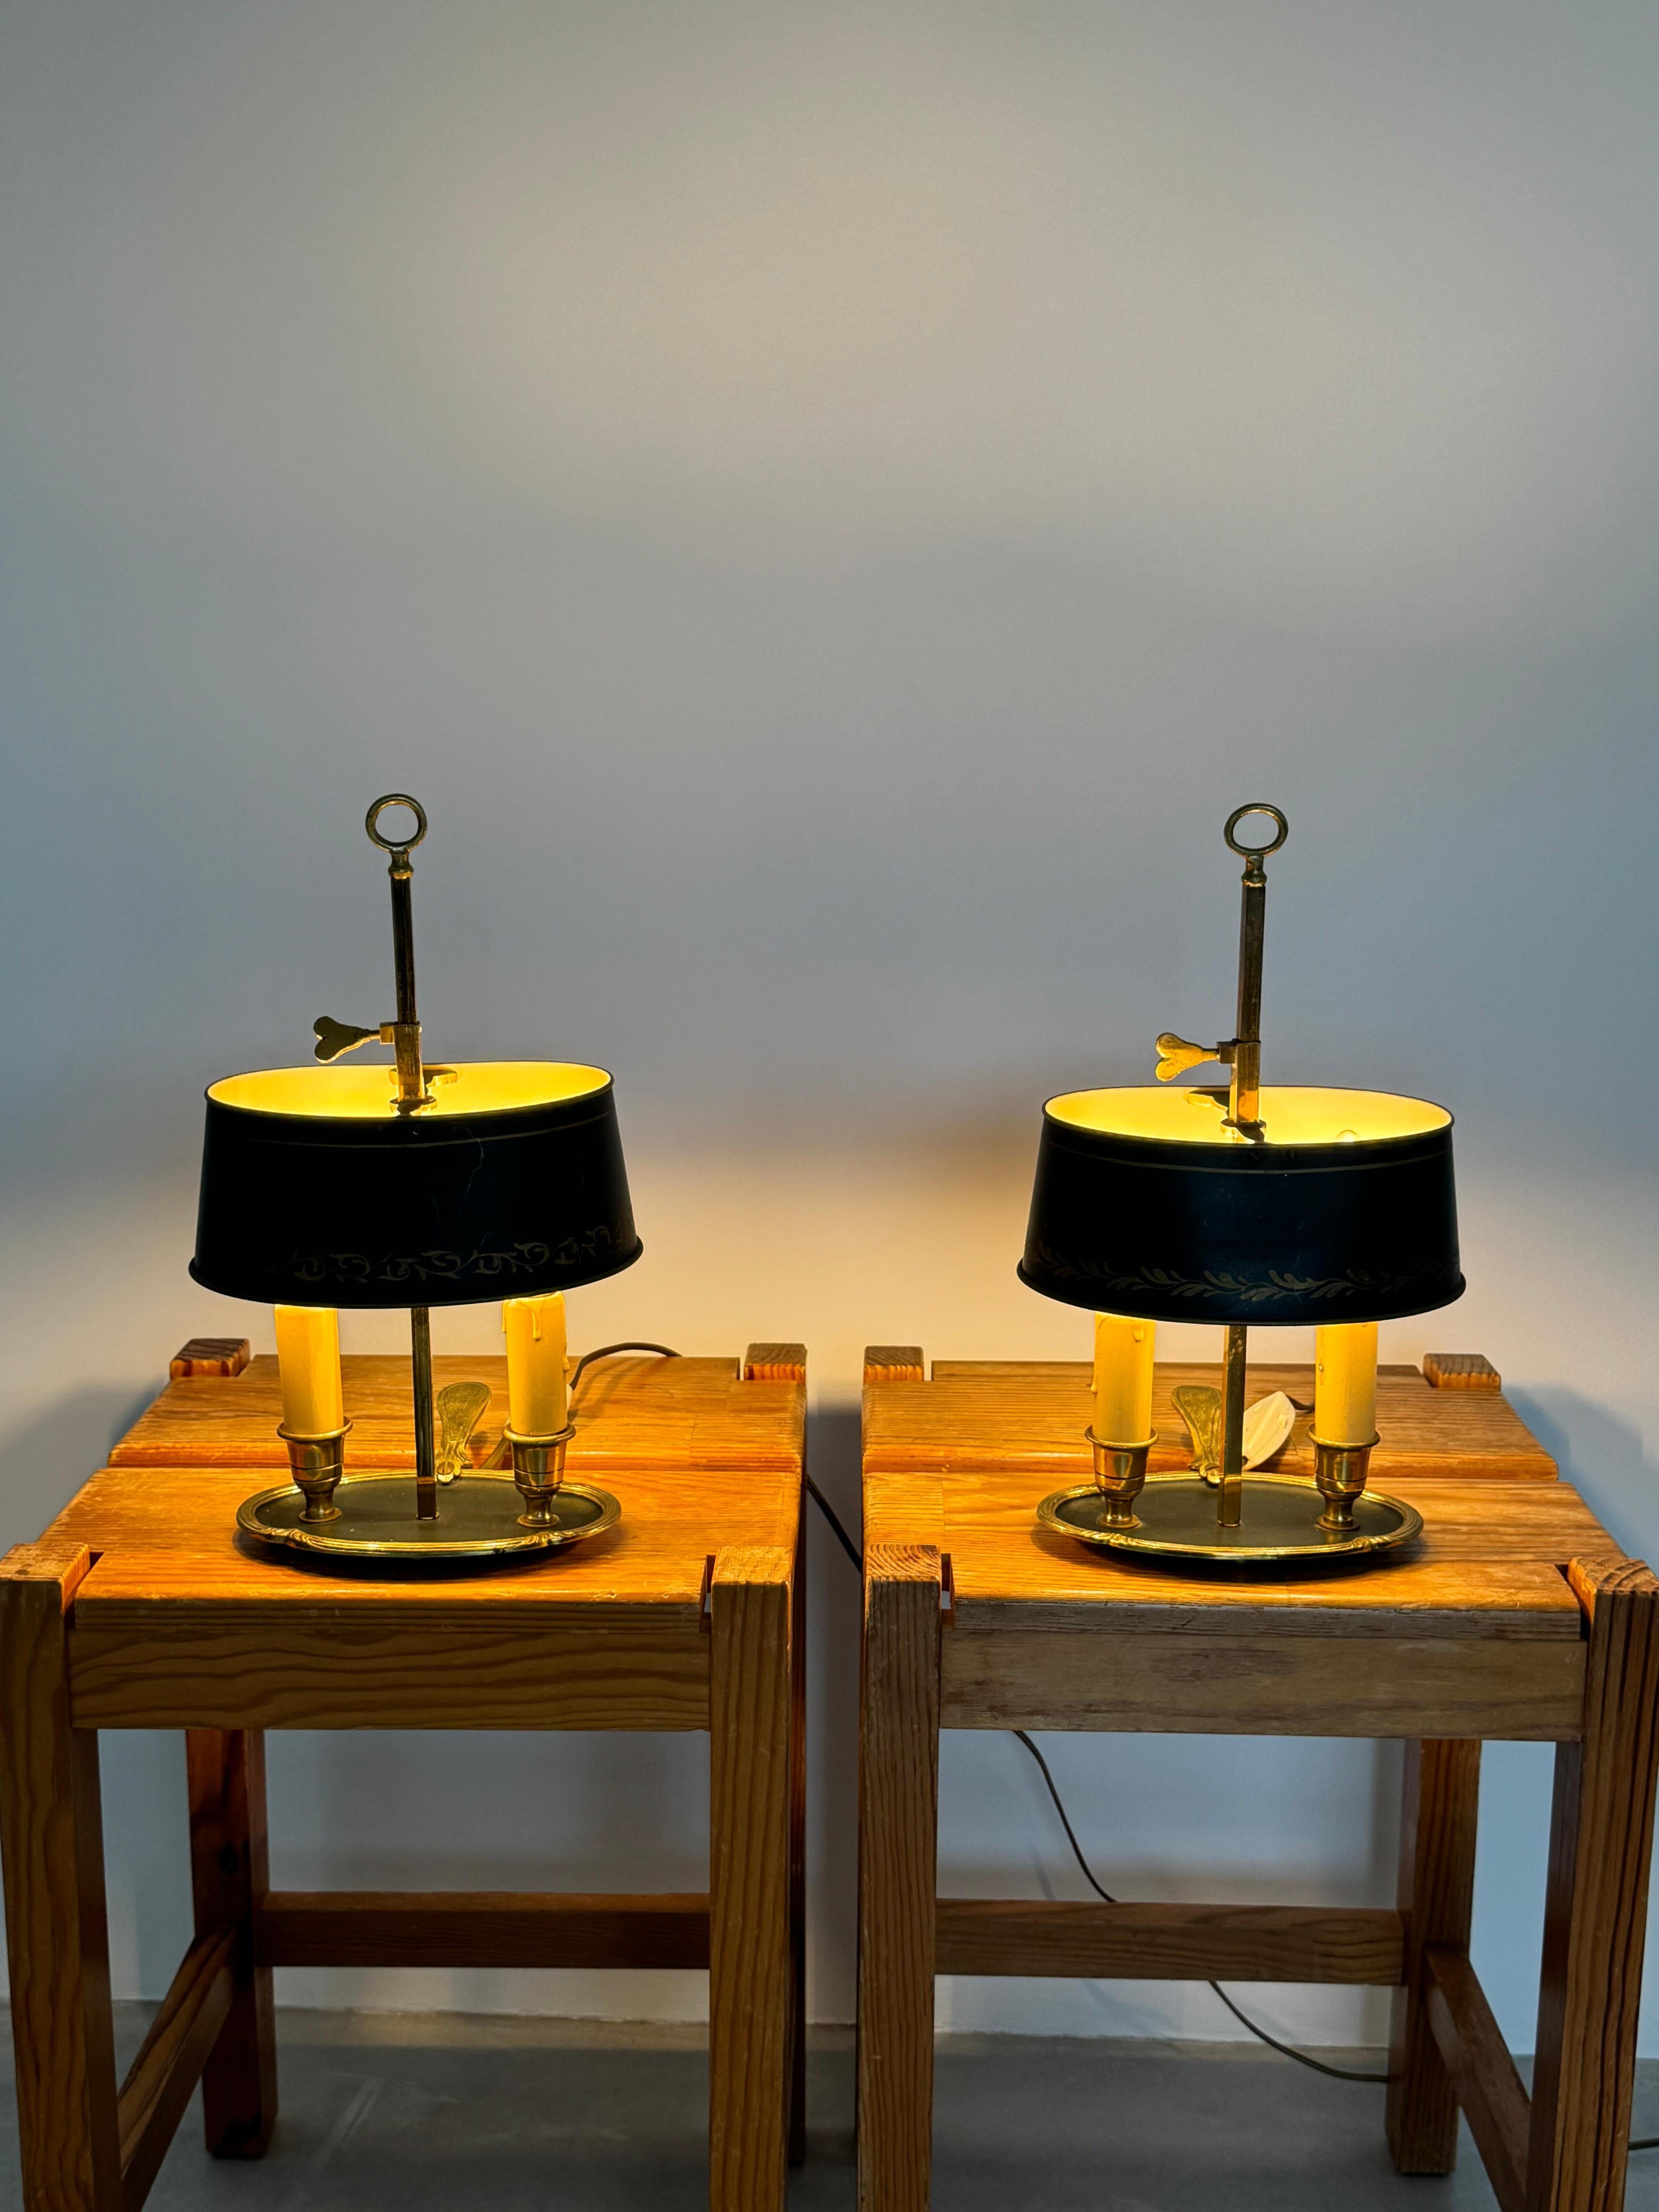 Ungewöhnliches Paar kleiner Bouillotte Nachttischlampen.

Vergoldete Bronze und verstellbarer Lampenschirm aus Metall.

Diese Lampen sind mit einem Schraubsystem verstellbar, so dass der Lampenschirm auf die Höhe der Kerzen eingestellt werden kann.